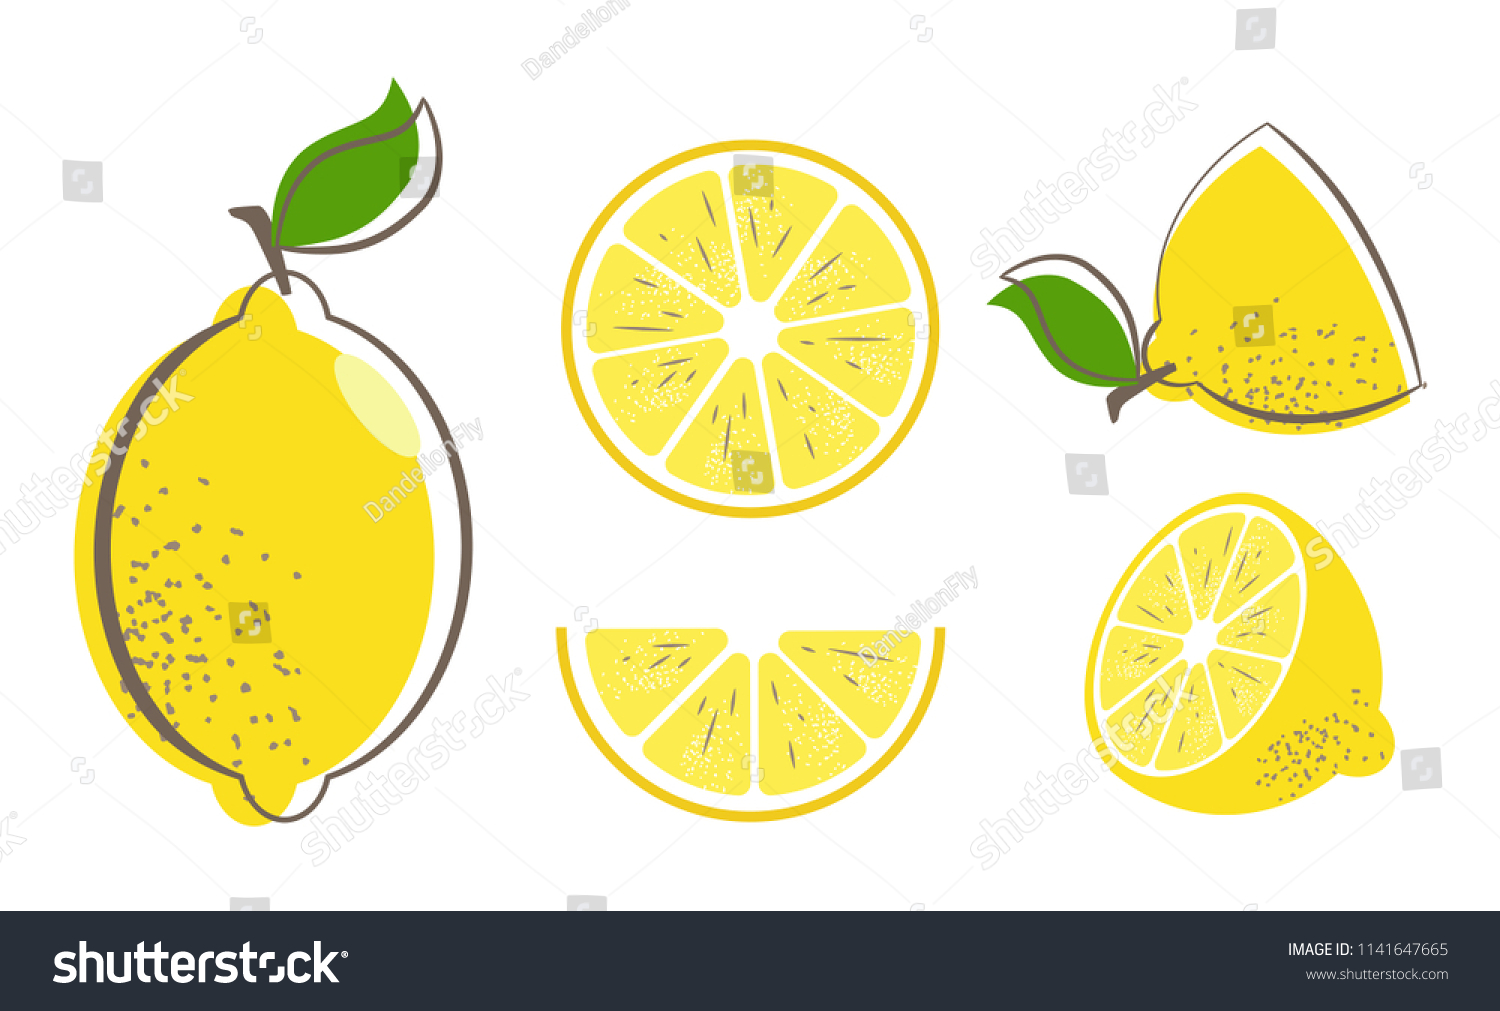 葉の付いた新鮮なレモンフルーツ レモンのベクターイラストセット 丸ごと半分に切り レモンを切ります かんきつコレクション レモンのロゴまたはアイコン のベクター画像素材 ロイヤリティフリー